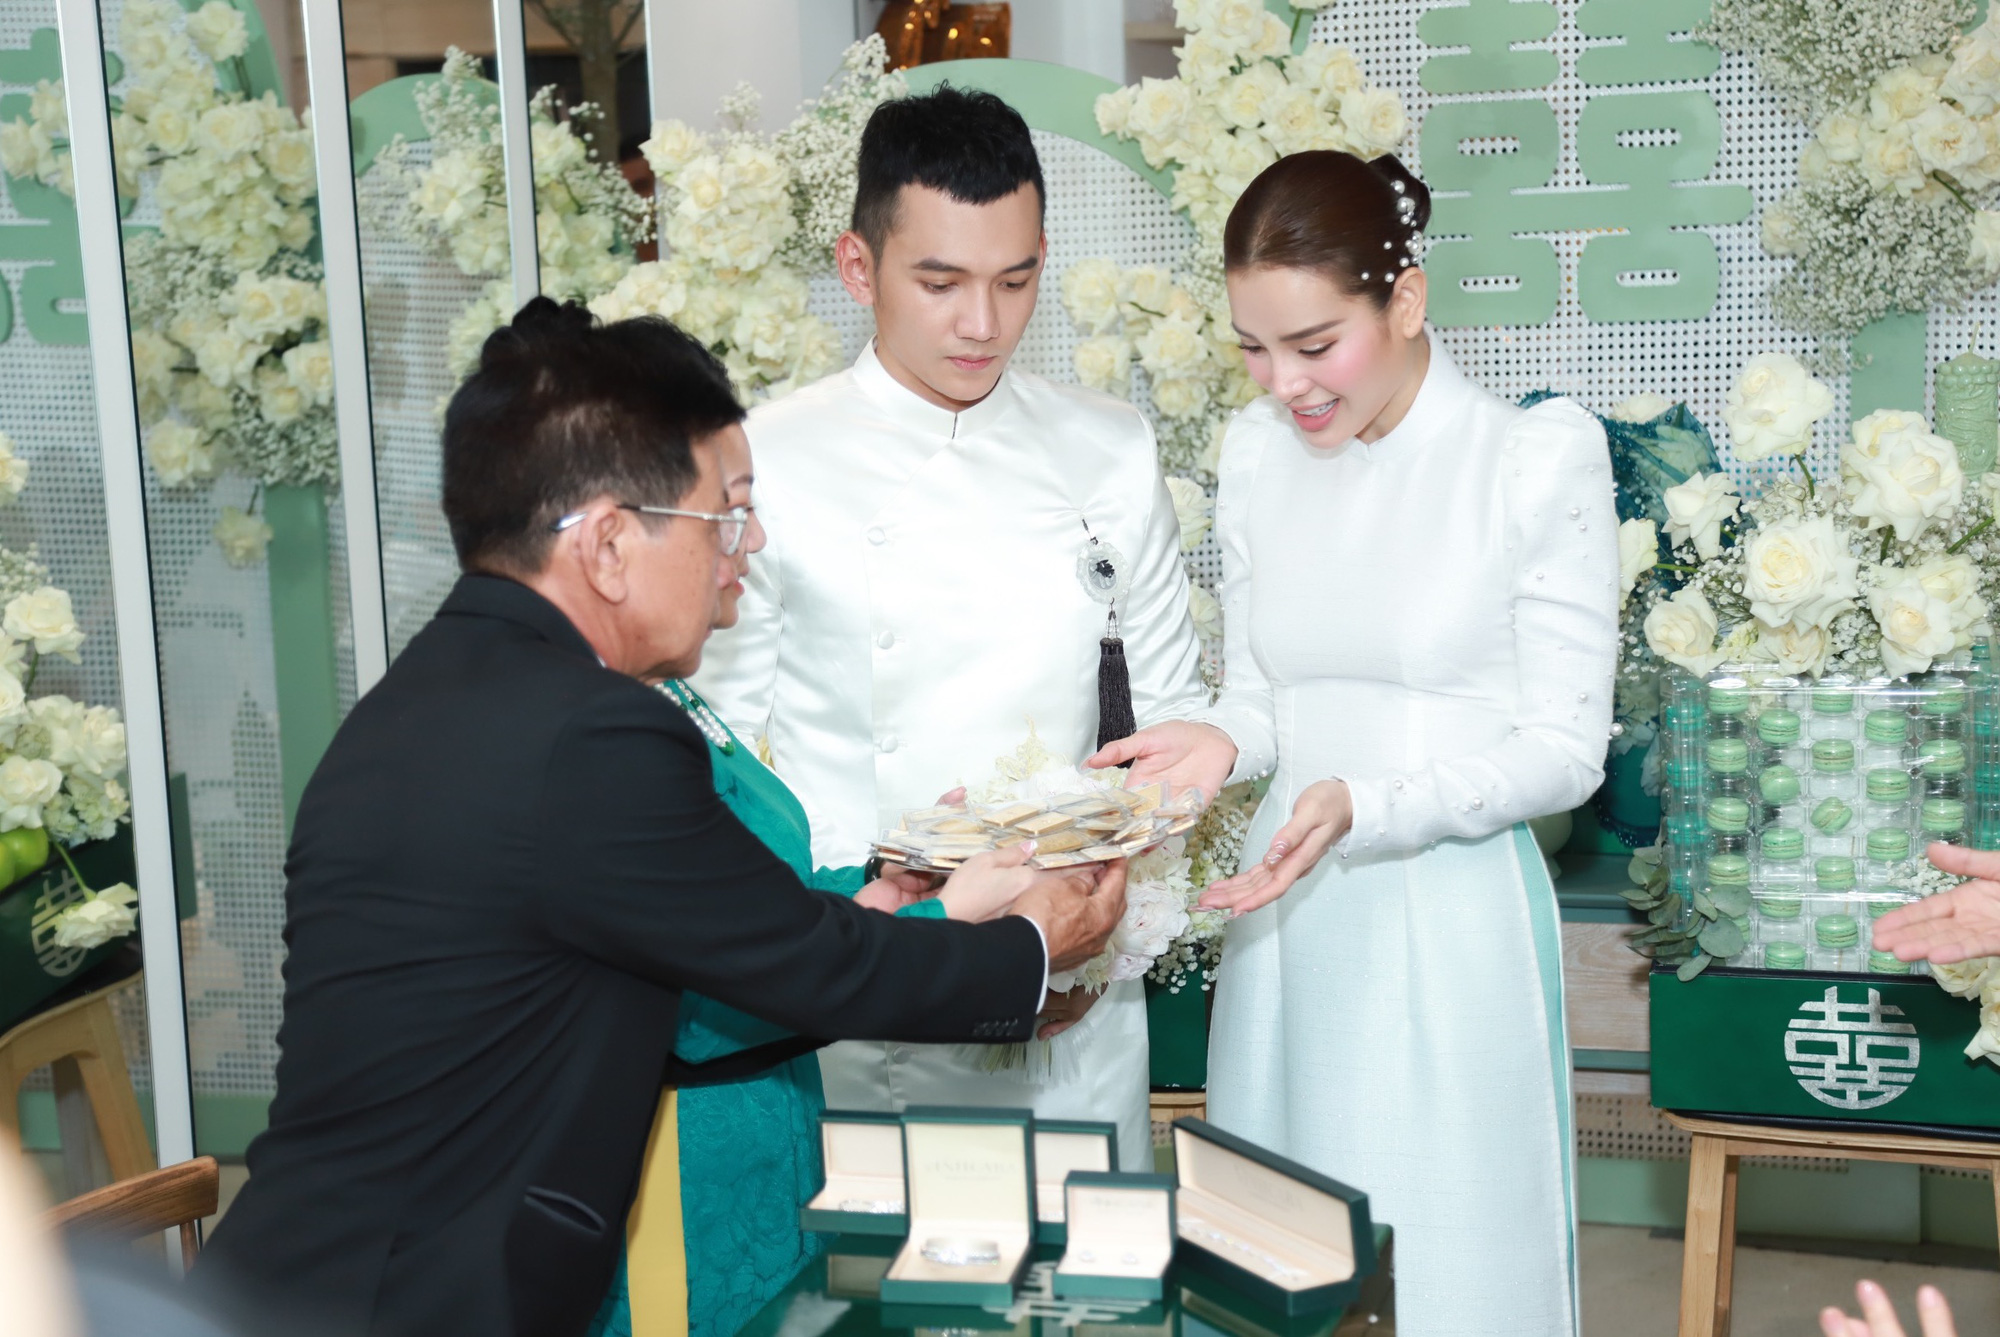 Lễ rước dâu Phương Trinh Jolie - Lý Bình: Cô dâu - chú rể xuất hiện, diện áo dài trắng vô cùng đẹp đôi - Ảnh 13.